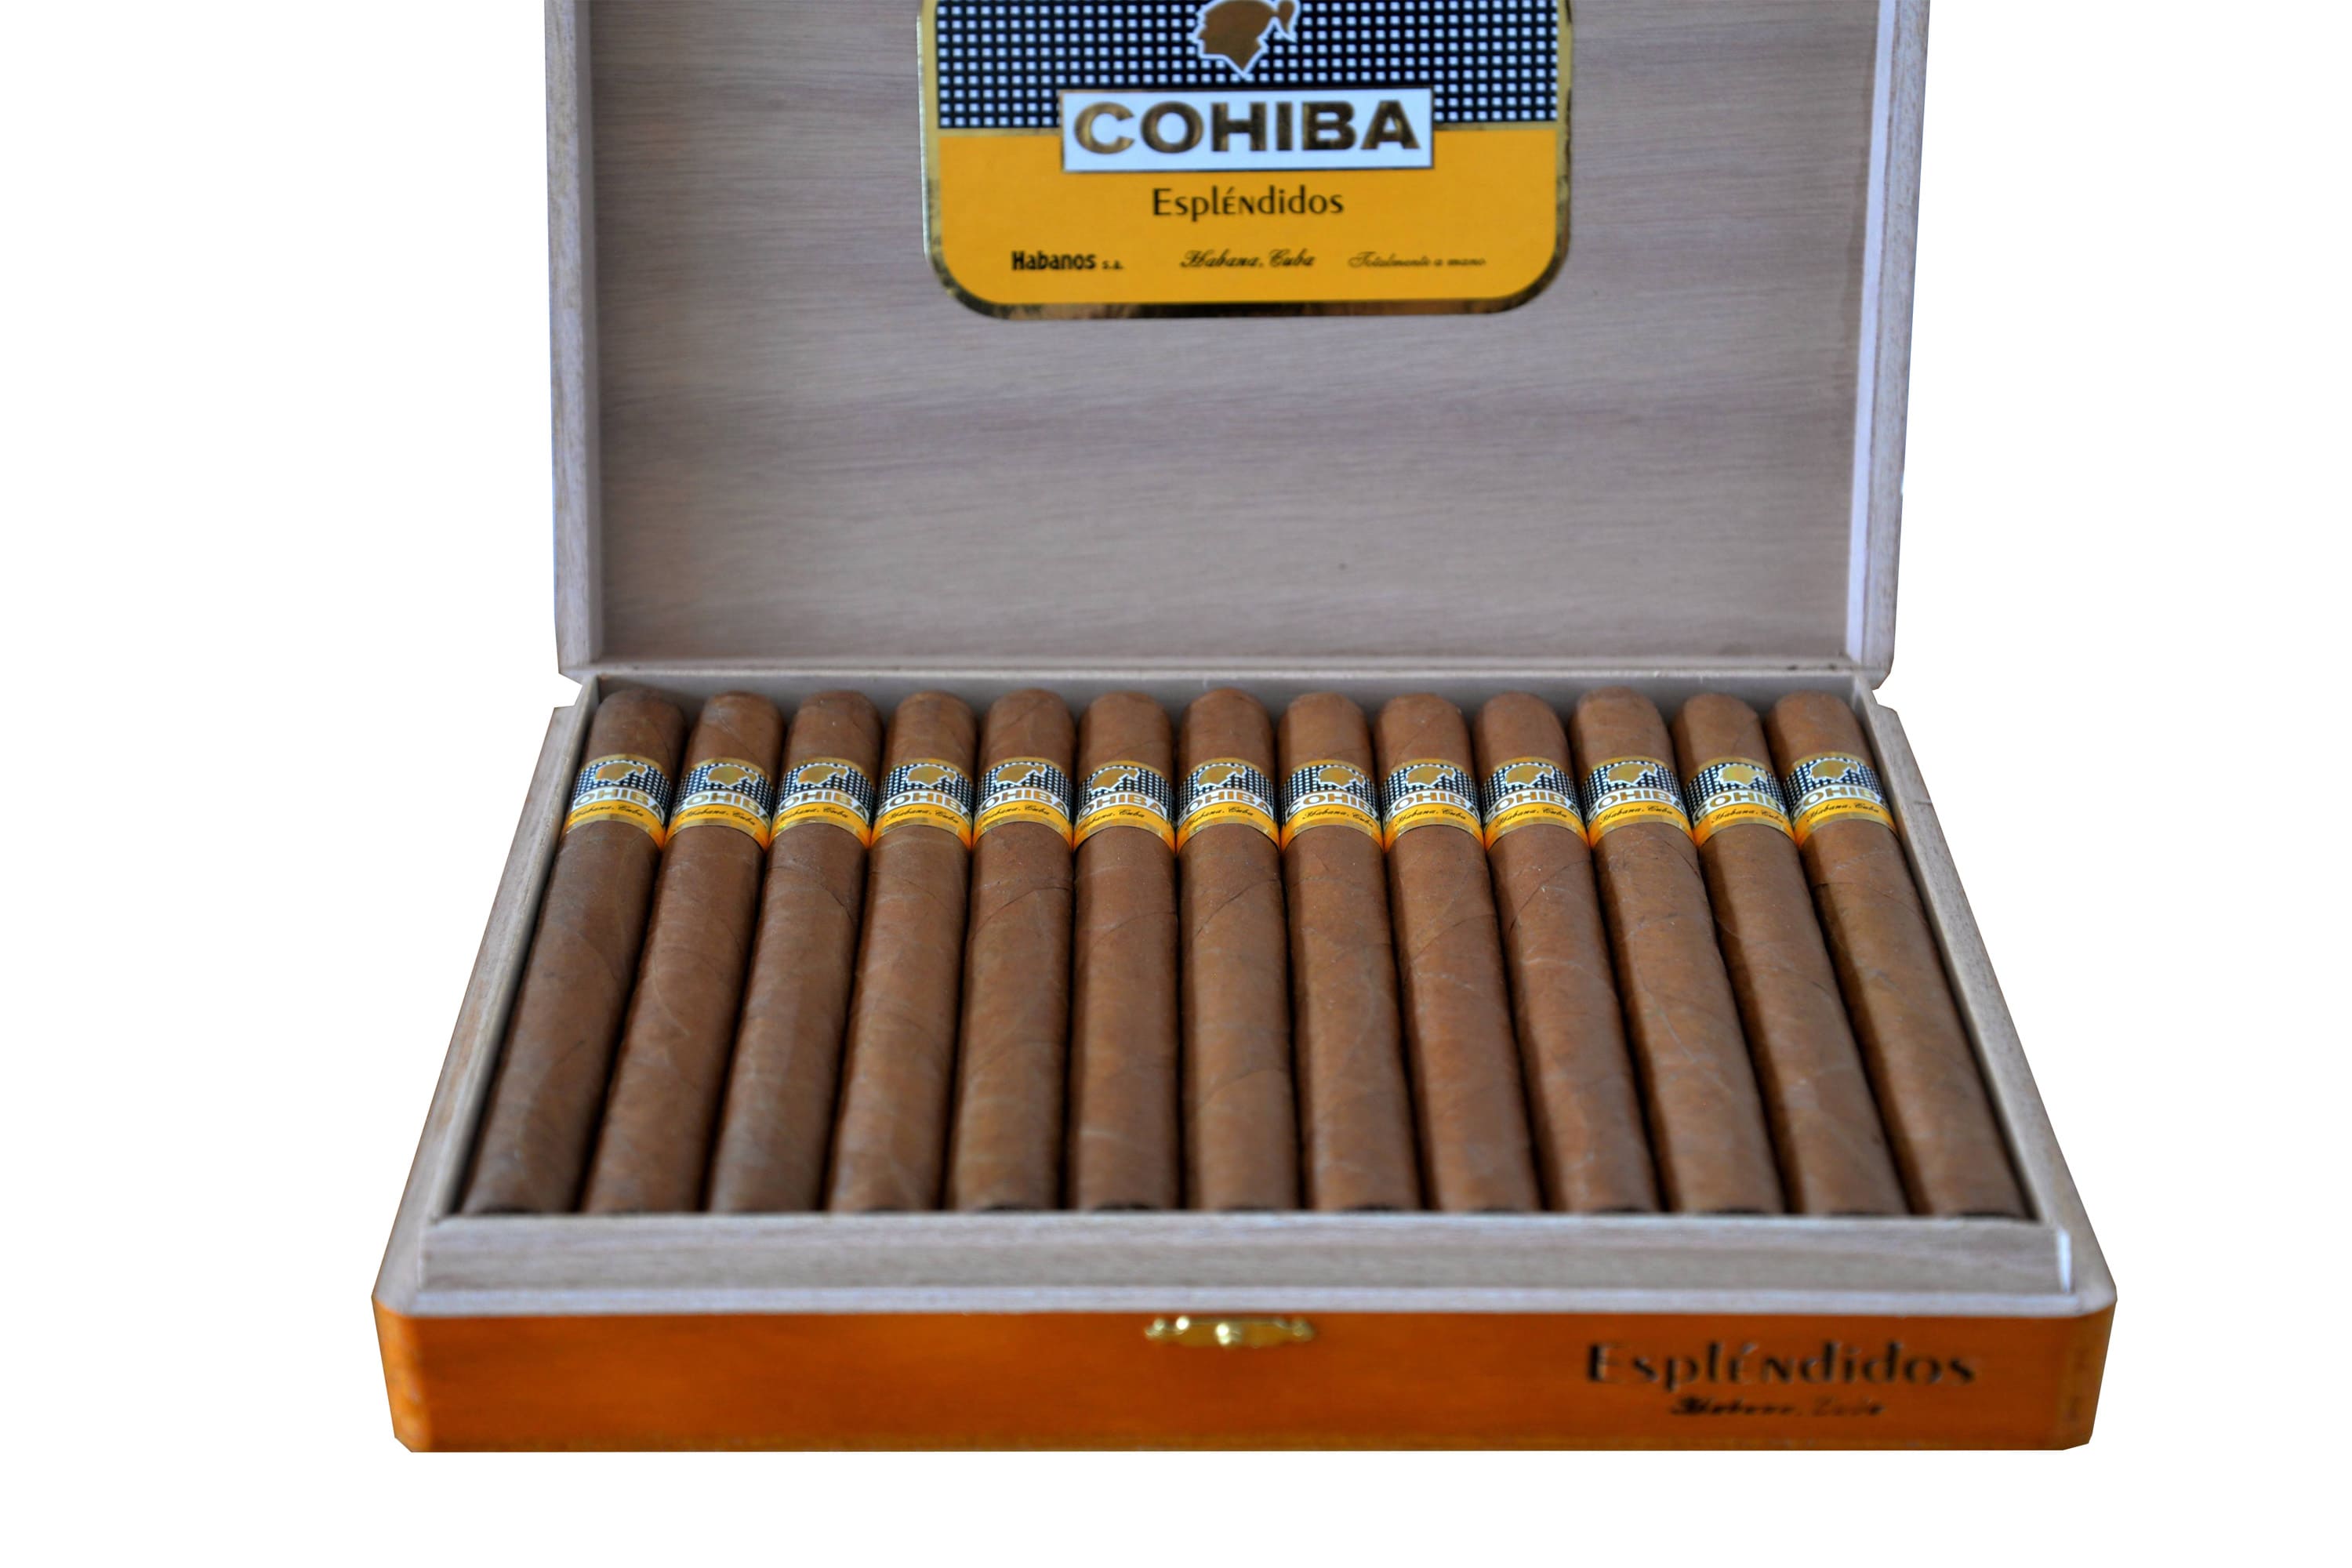 Купить сигару кубинскую в магазине. Сигары Cohiba esplendidos. Кубинские сигары Cohiba. Сигары Коиба Пирамидес. Кубинские сигары Cohiba Mini.